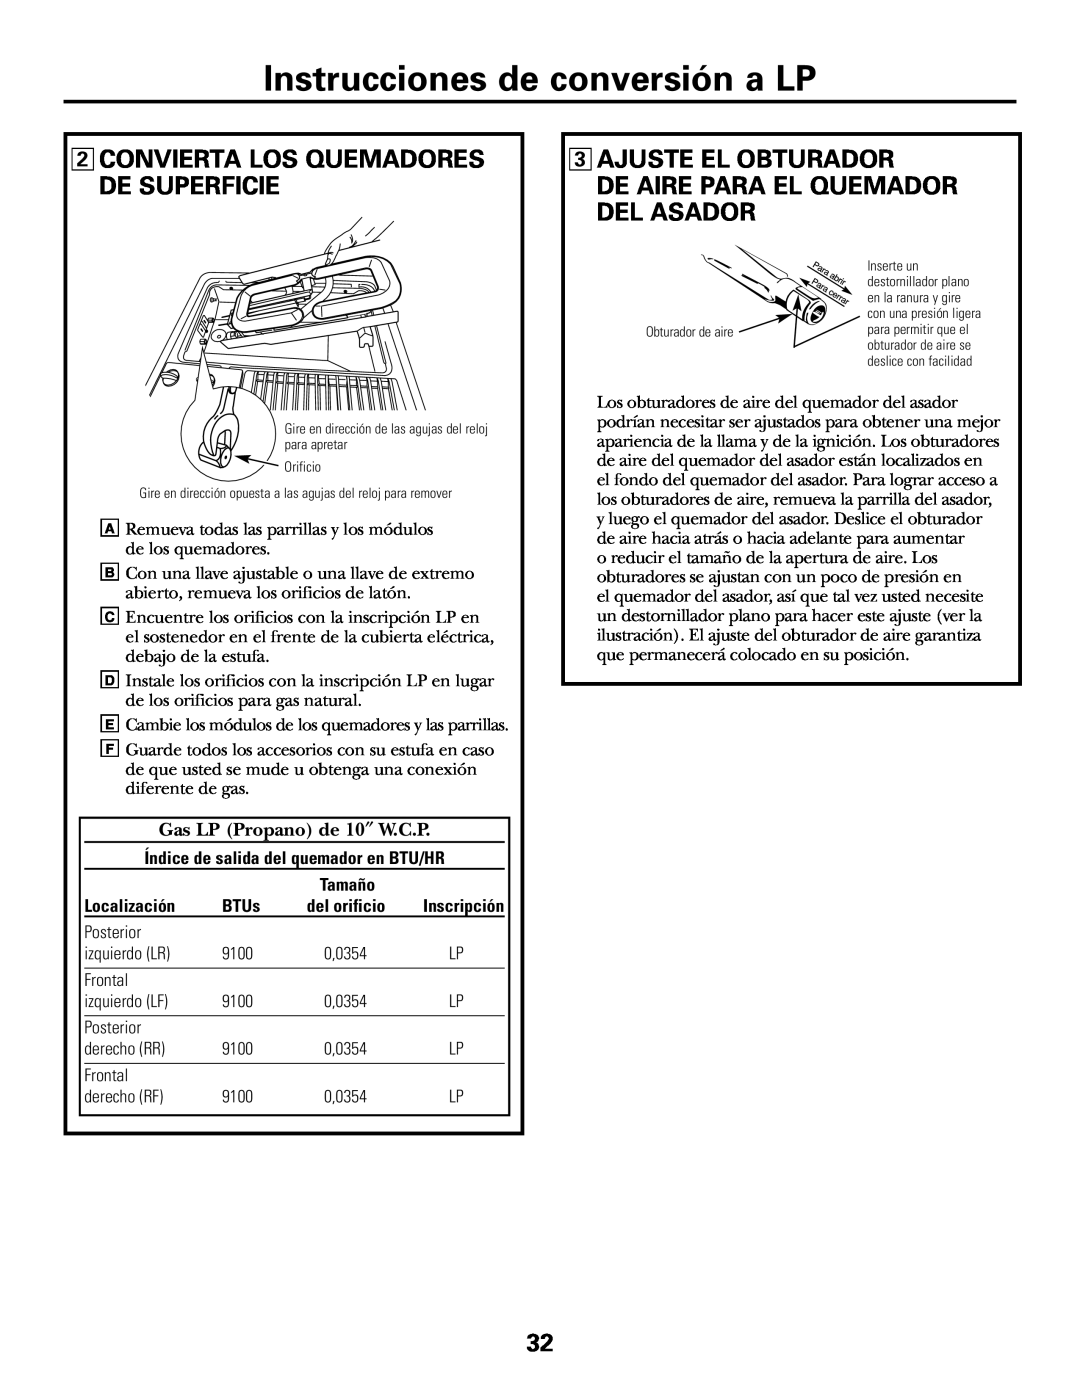 GE JGP985 Instrucciones de conversión a LP, 2CONVIERTA LOS QUEMADORES DE SUPERFICIE, 3AJUSTE EL OBTURADOR, Localización 